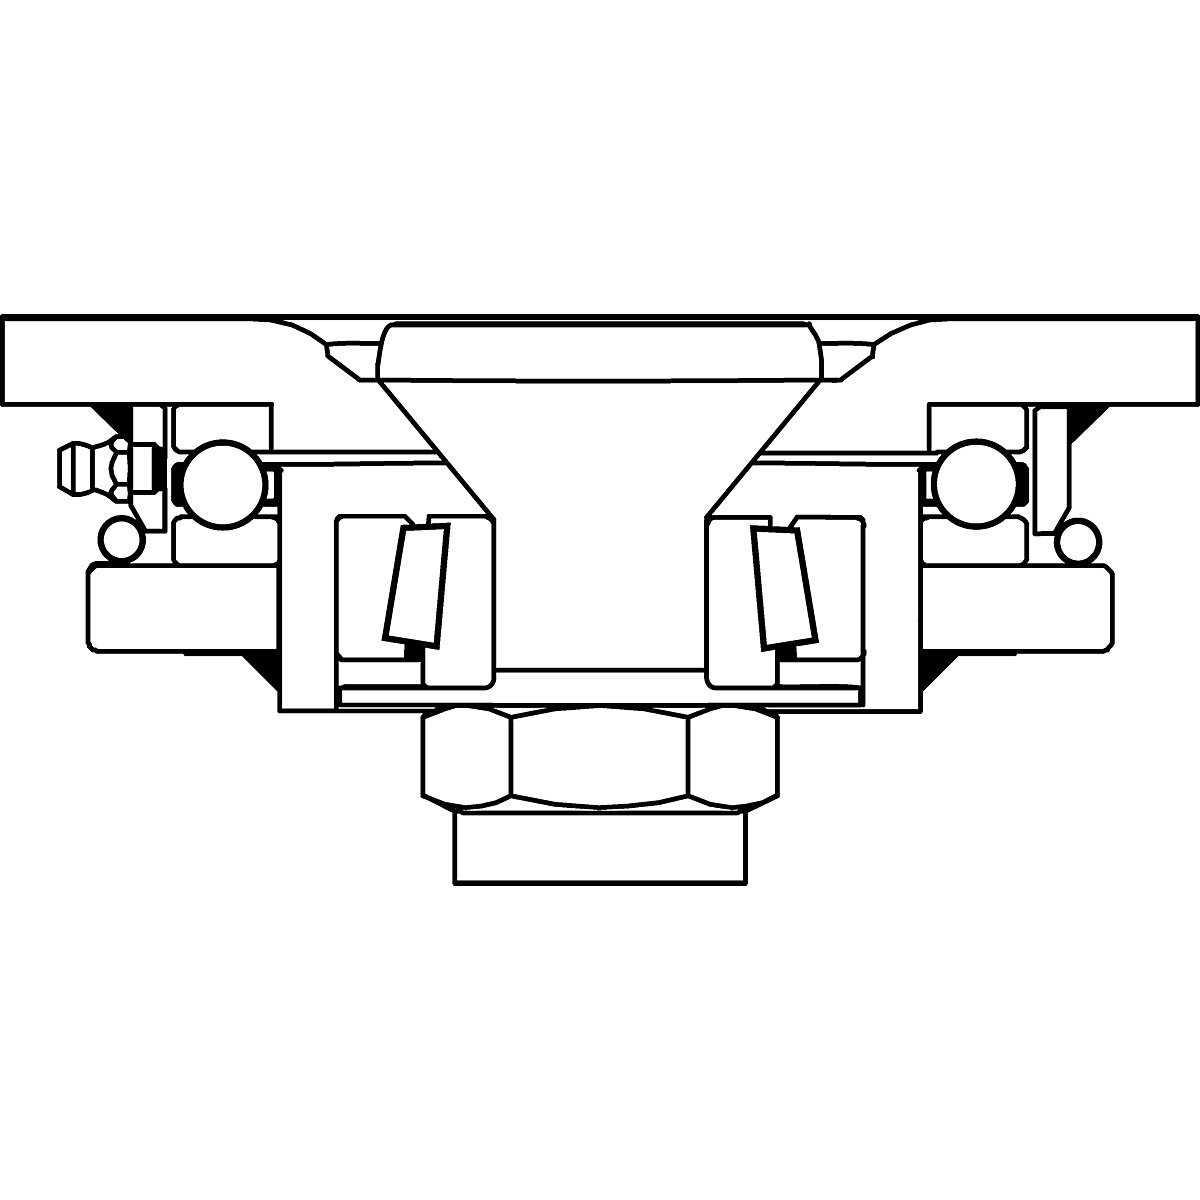 Cubierta de poliuretano, dimensiones de la placa 138 x 110 mm – Proroll (Imagen del producto 7)-6